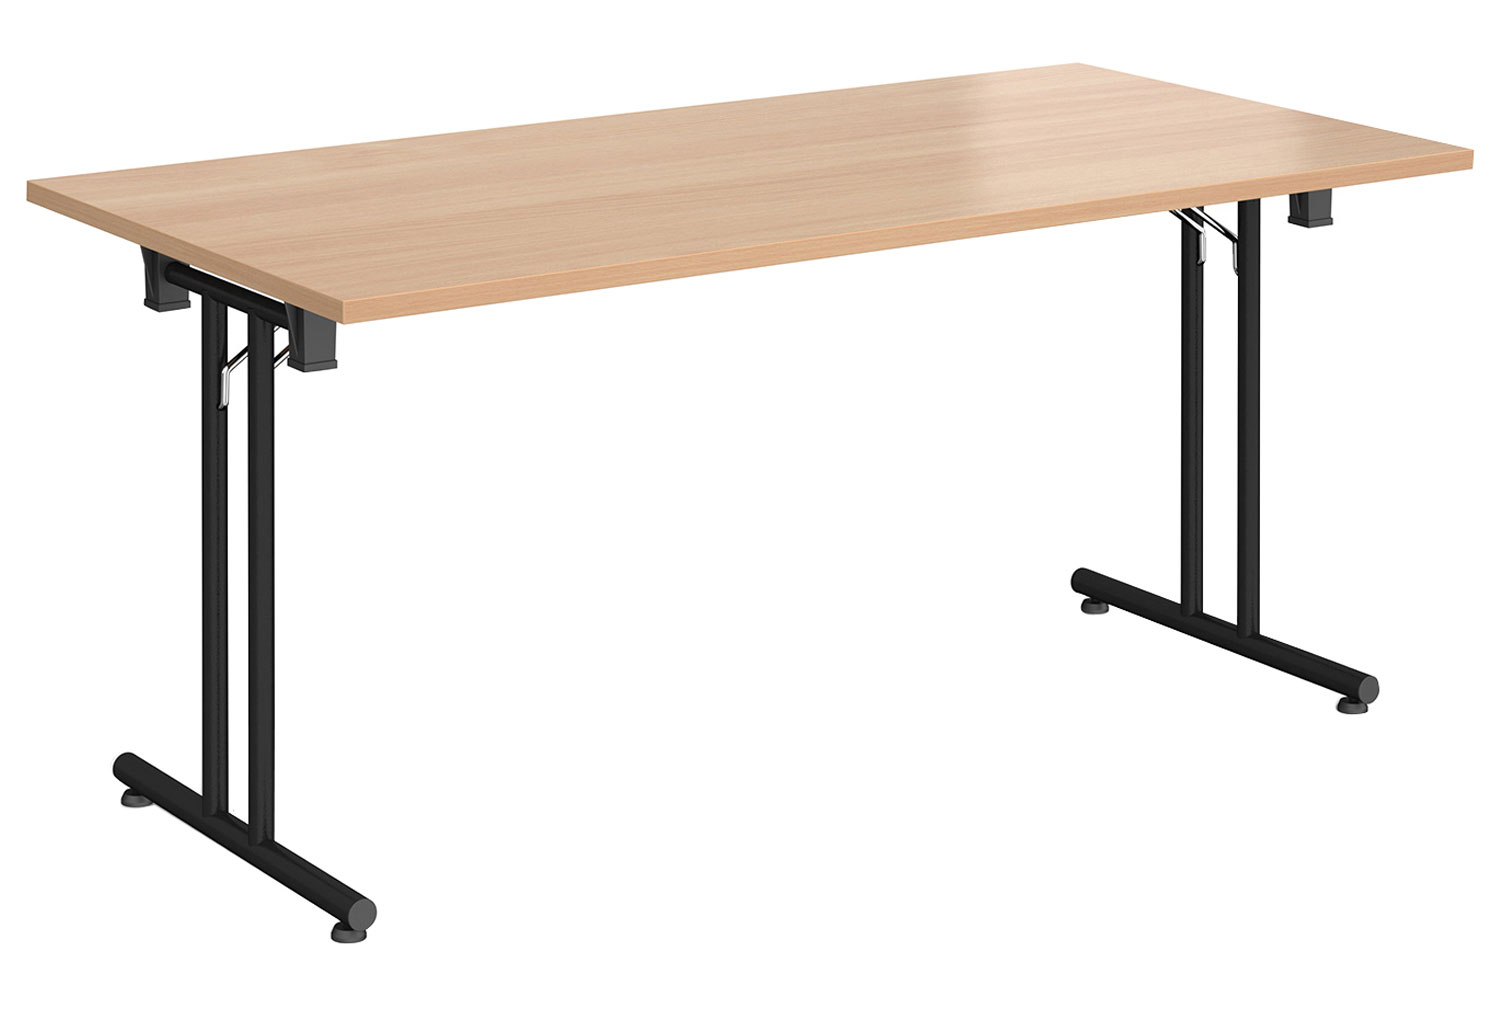 Ziegler Rectangular Folding Table, 160wx80dx73h (cm), Beech